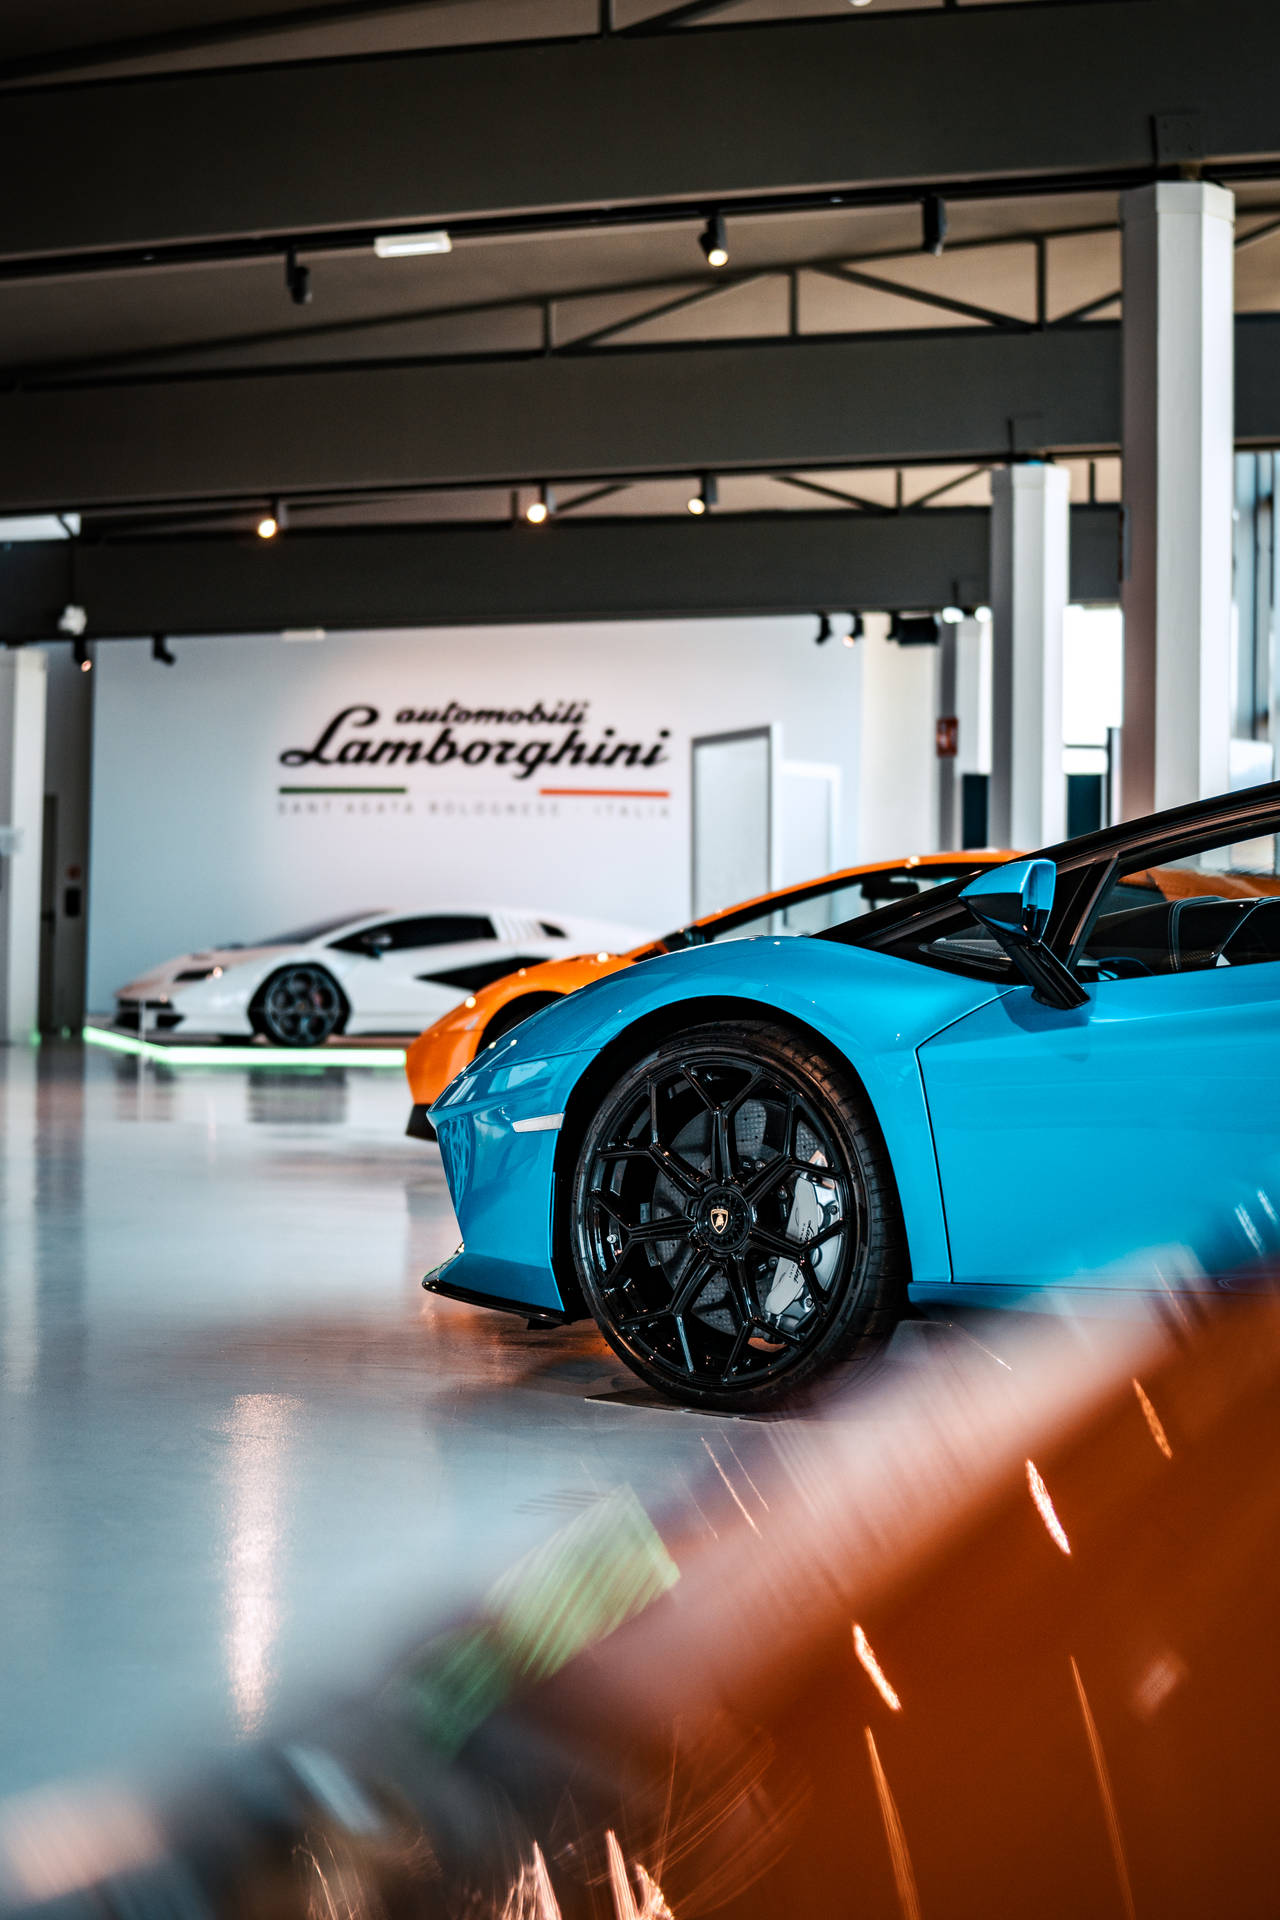 4k Lamborghini showroom tapet: Åbn scenen til denne Lamborghini showroom med dette 4K tapet. Wallpaper